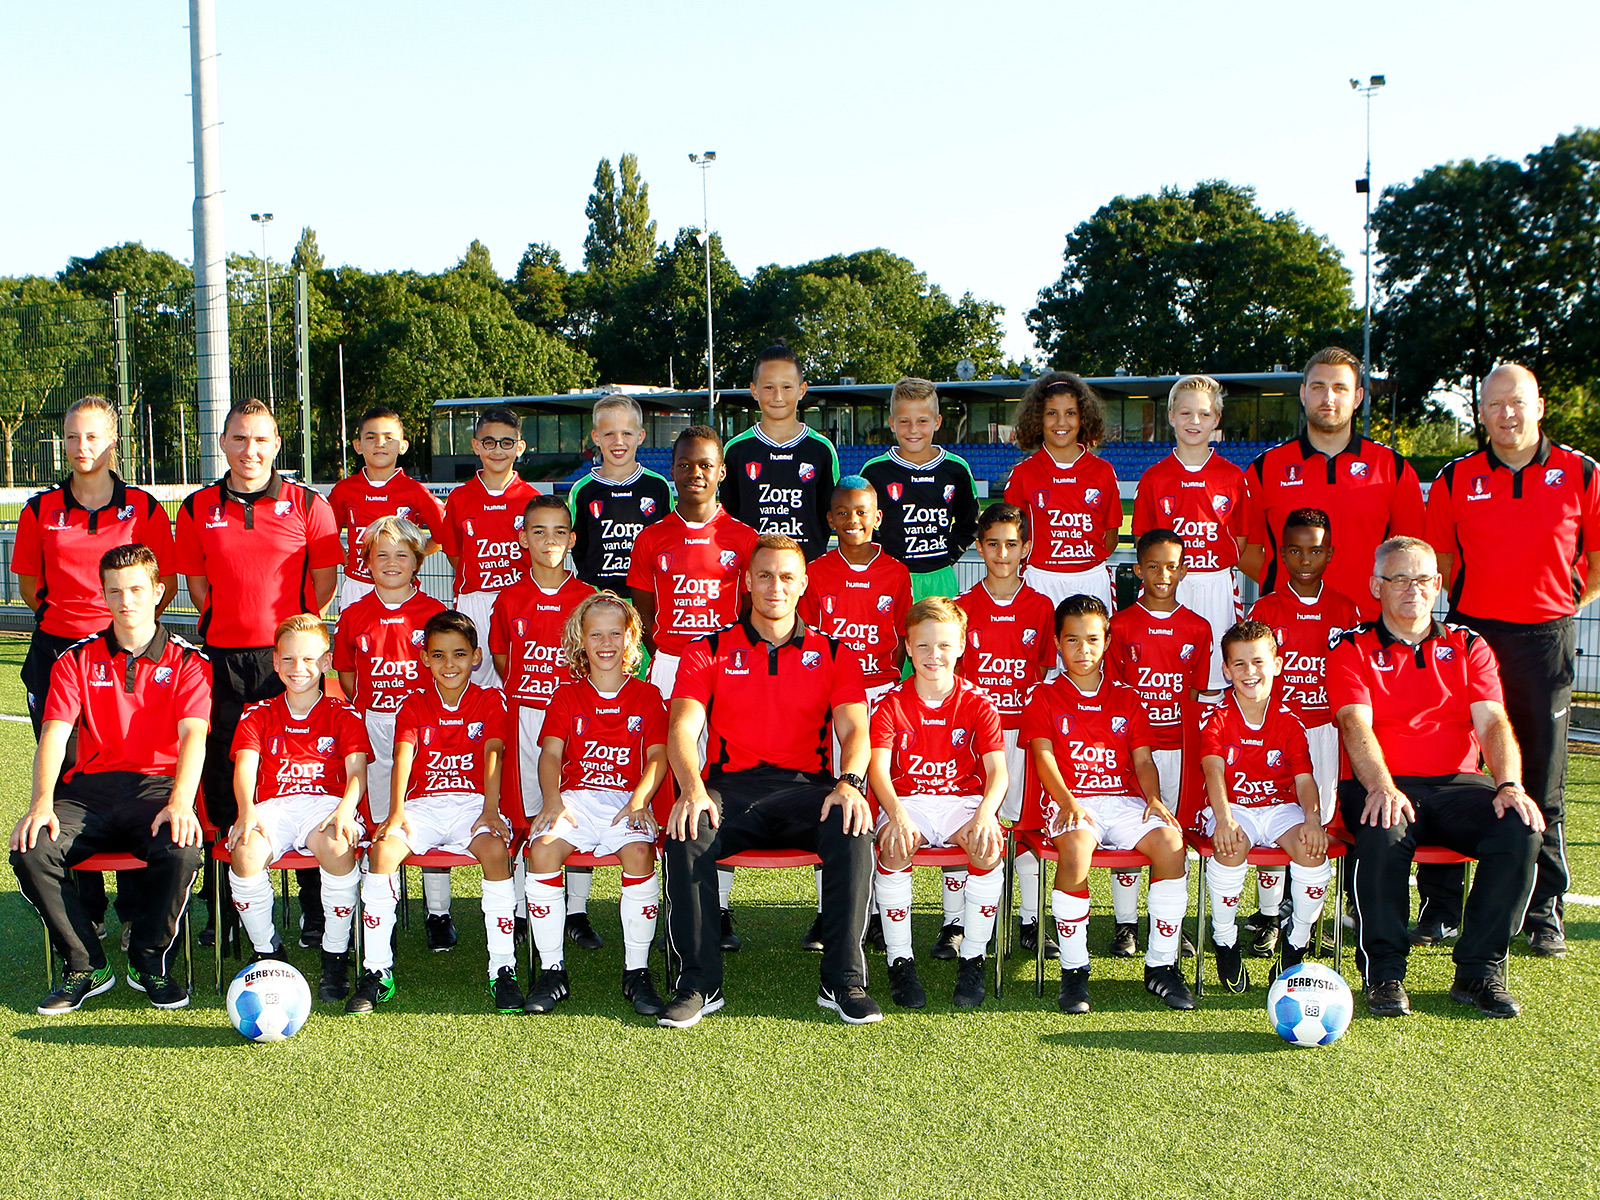 FC Utrecht O11 Team van de Maand